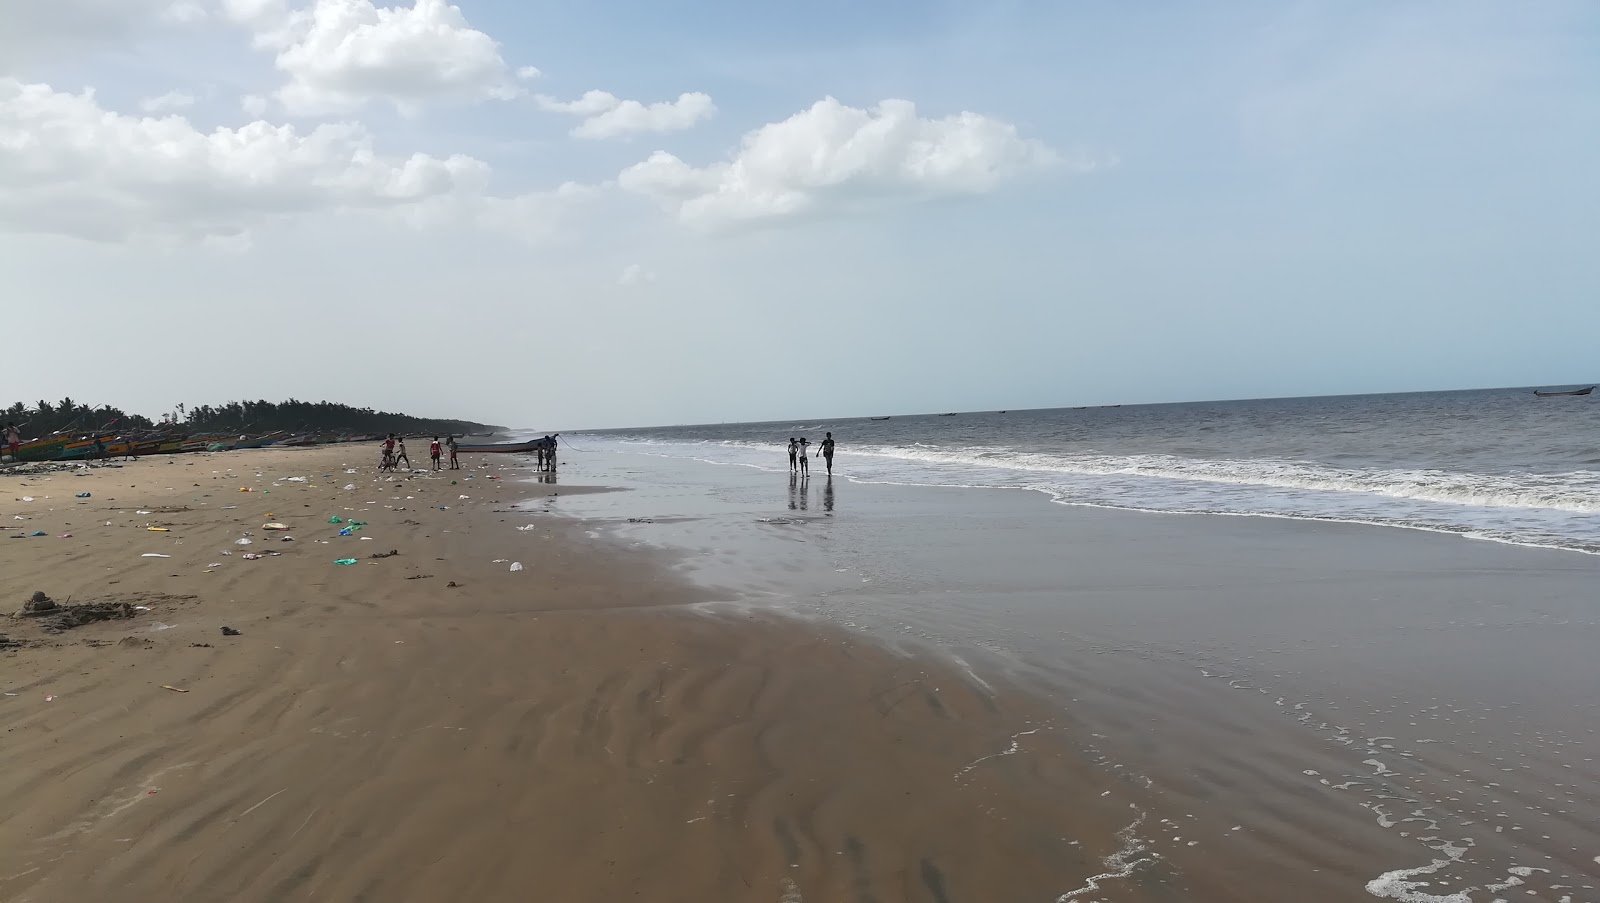 Fotografija Kameswaram Beach priljubljeno mesto med poznavalci sprostitve